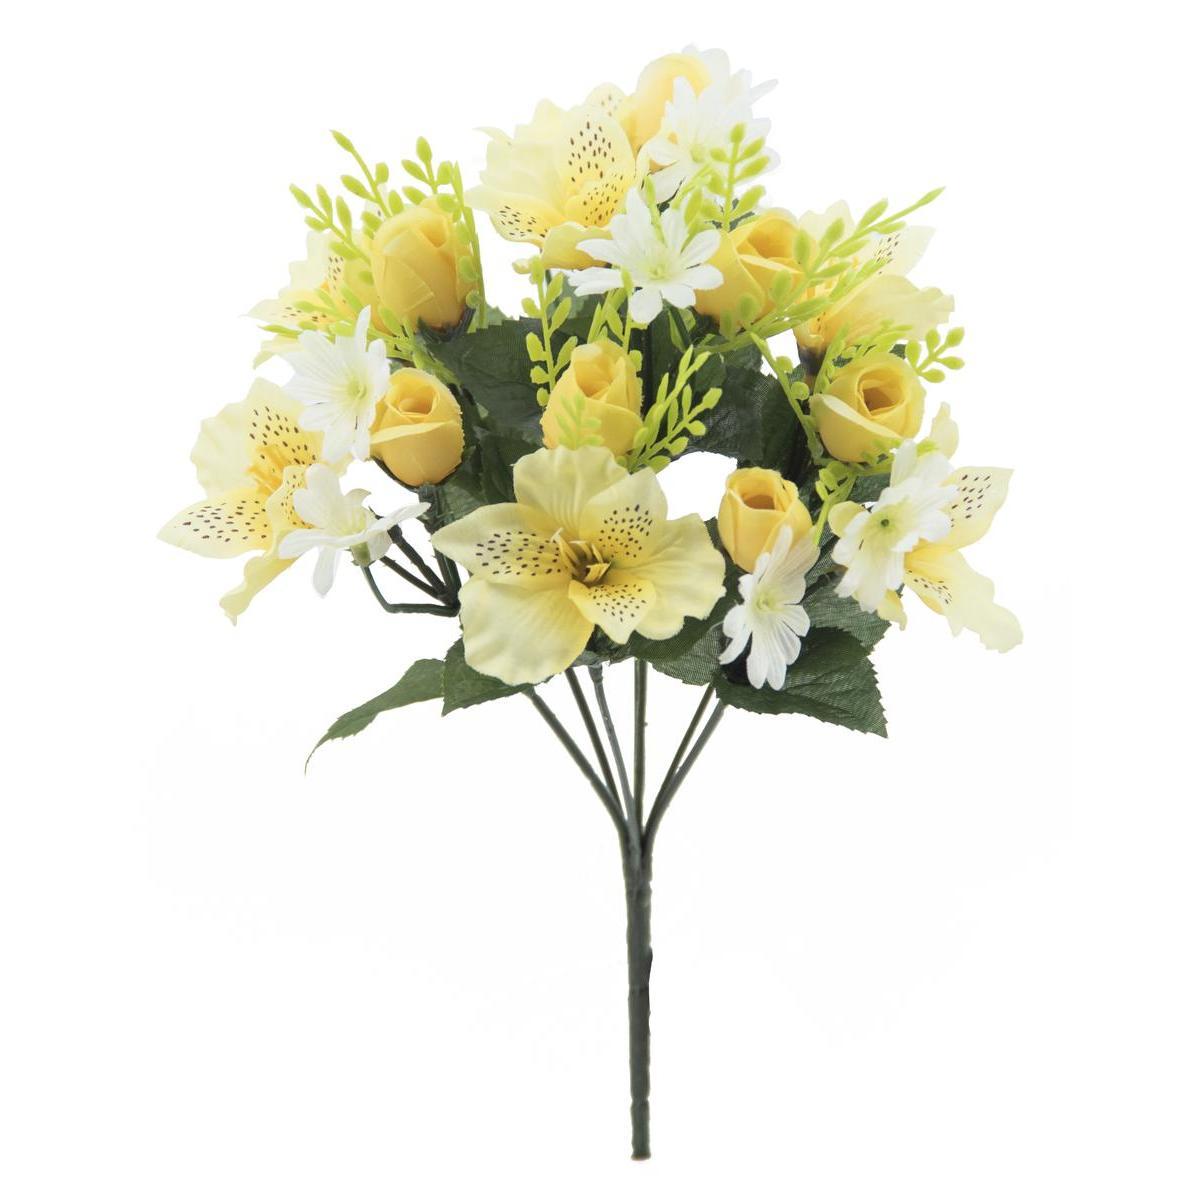 Bouquet de roses, marguerites et alstroemerias - H 32 cm